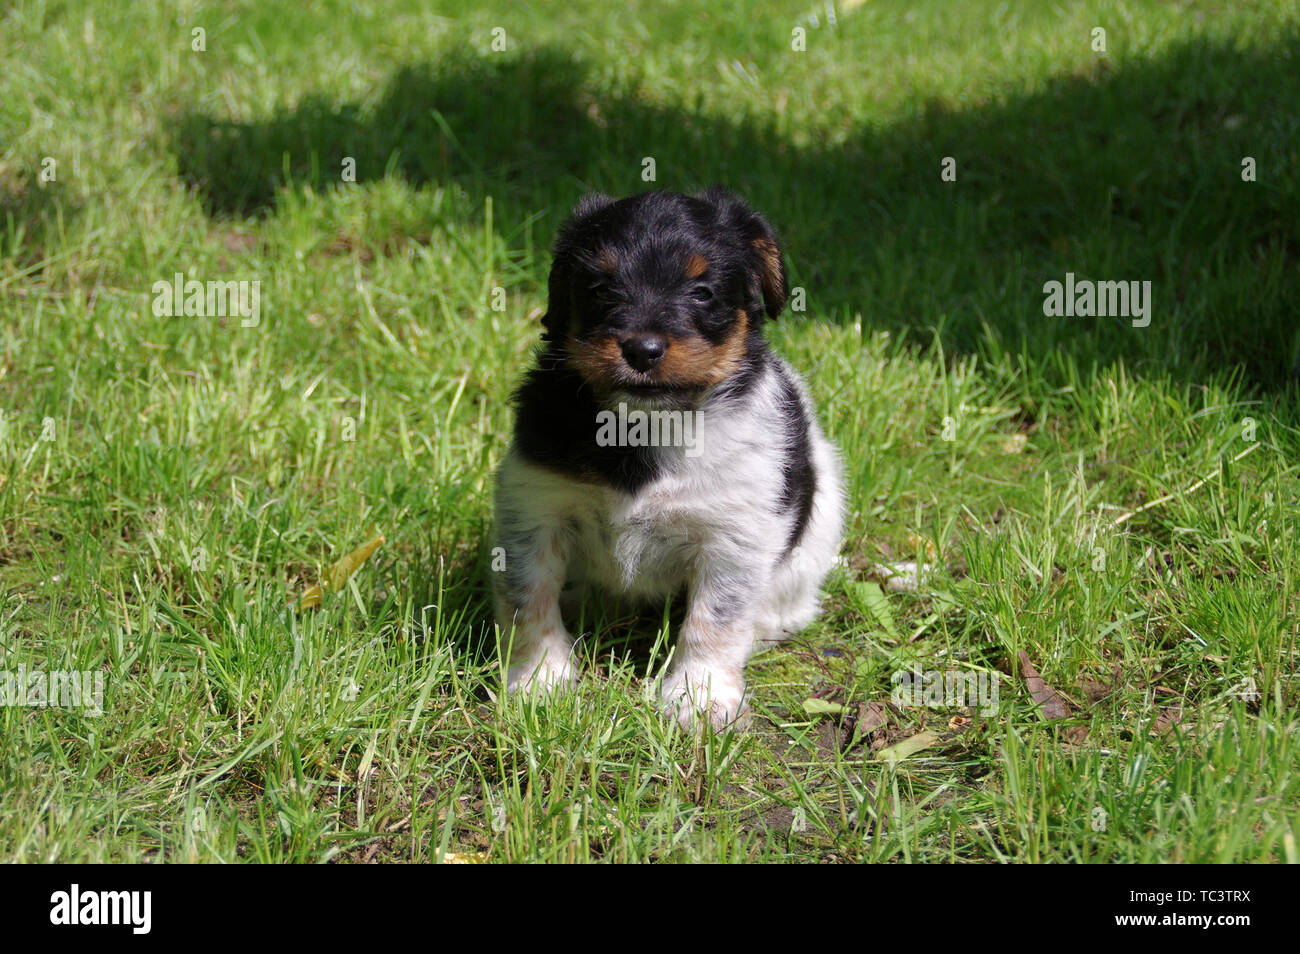 Il cucciolo è seduto sull'erba. Il ritratto del piccolo cane arriva a conoscere il mondo con curiosità. Foto Stock